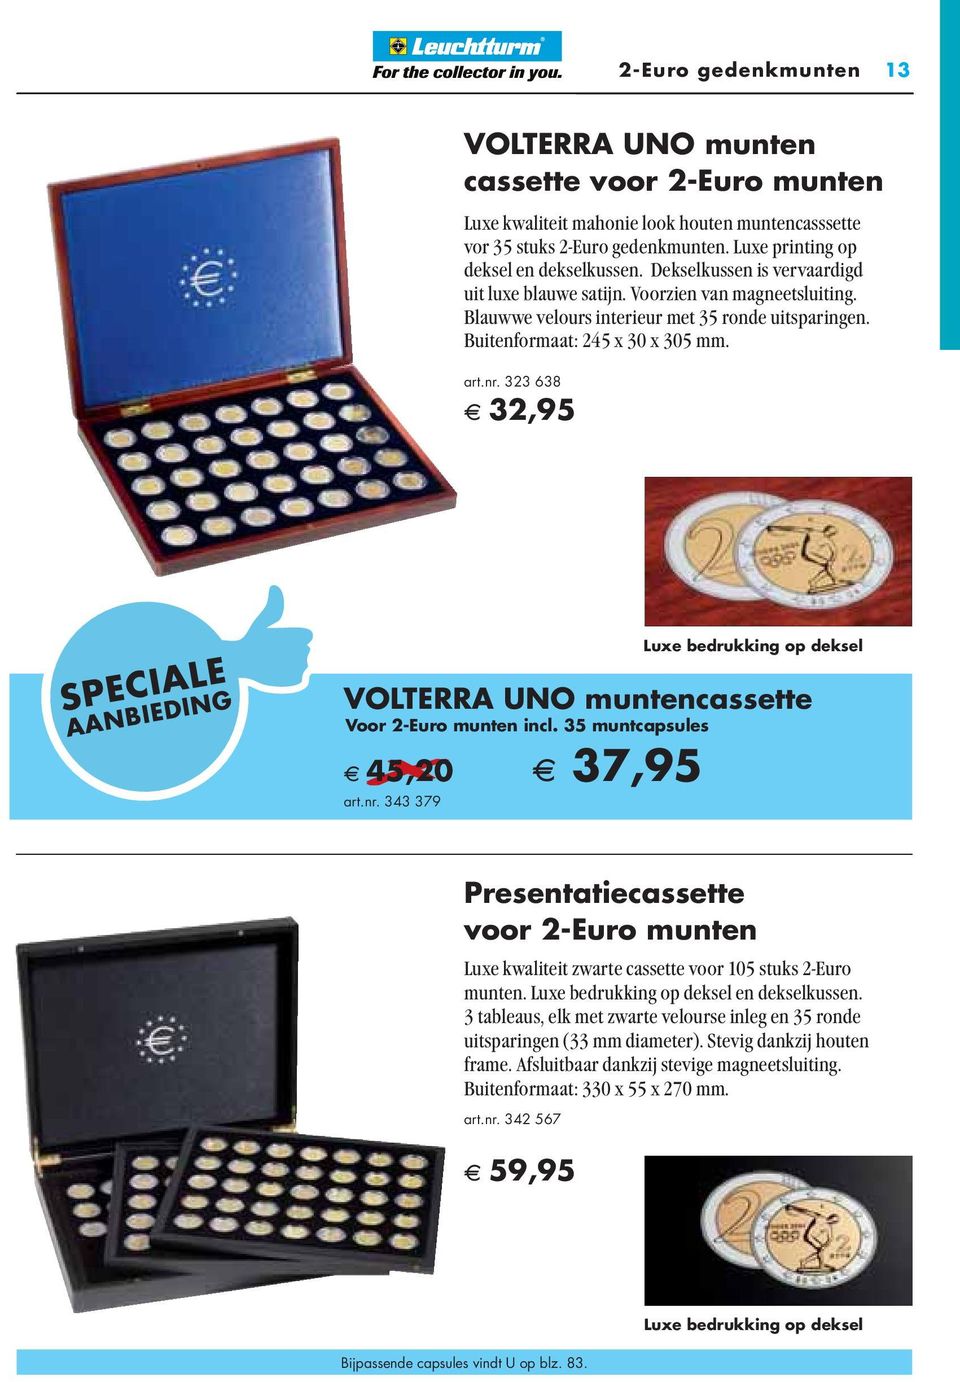 323 638 A 32,95 SPECIALE AANBIEDING Luxe bedrukking op deksel VOLTERRA UNO muntencassette Voor 2-Euro munten incl. 35 muntcapsules A 45,20 A 37,95 art.nr.